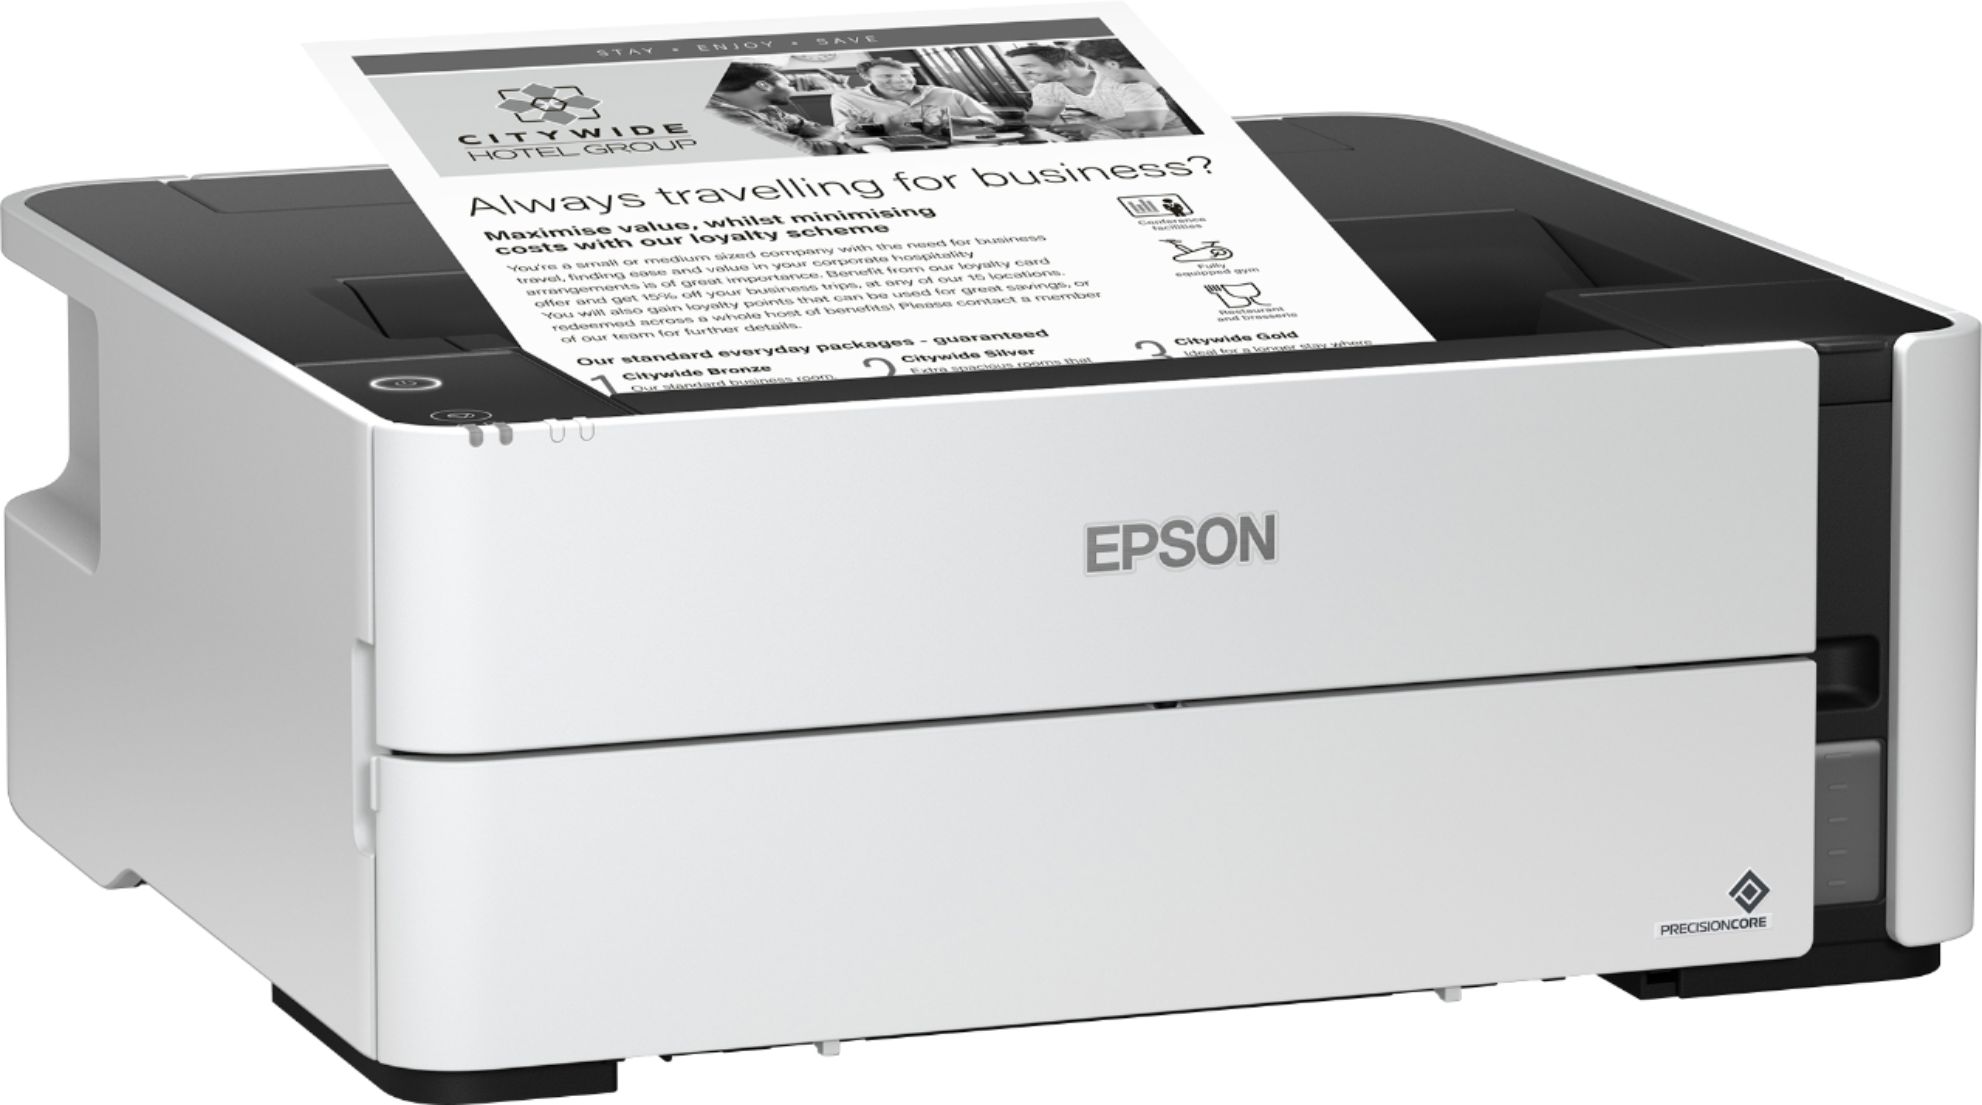 Angle View: Epson - EcoTank ET-M1170 Wireless Monochrome SuperTank Printer - White